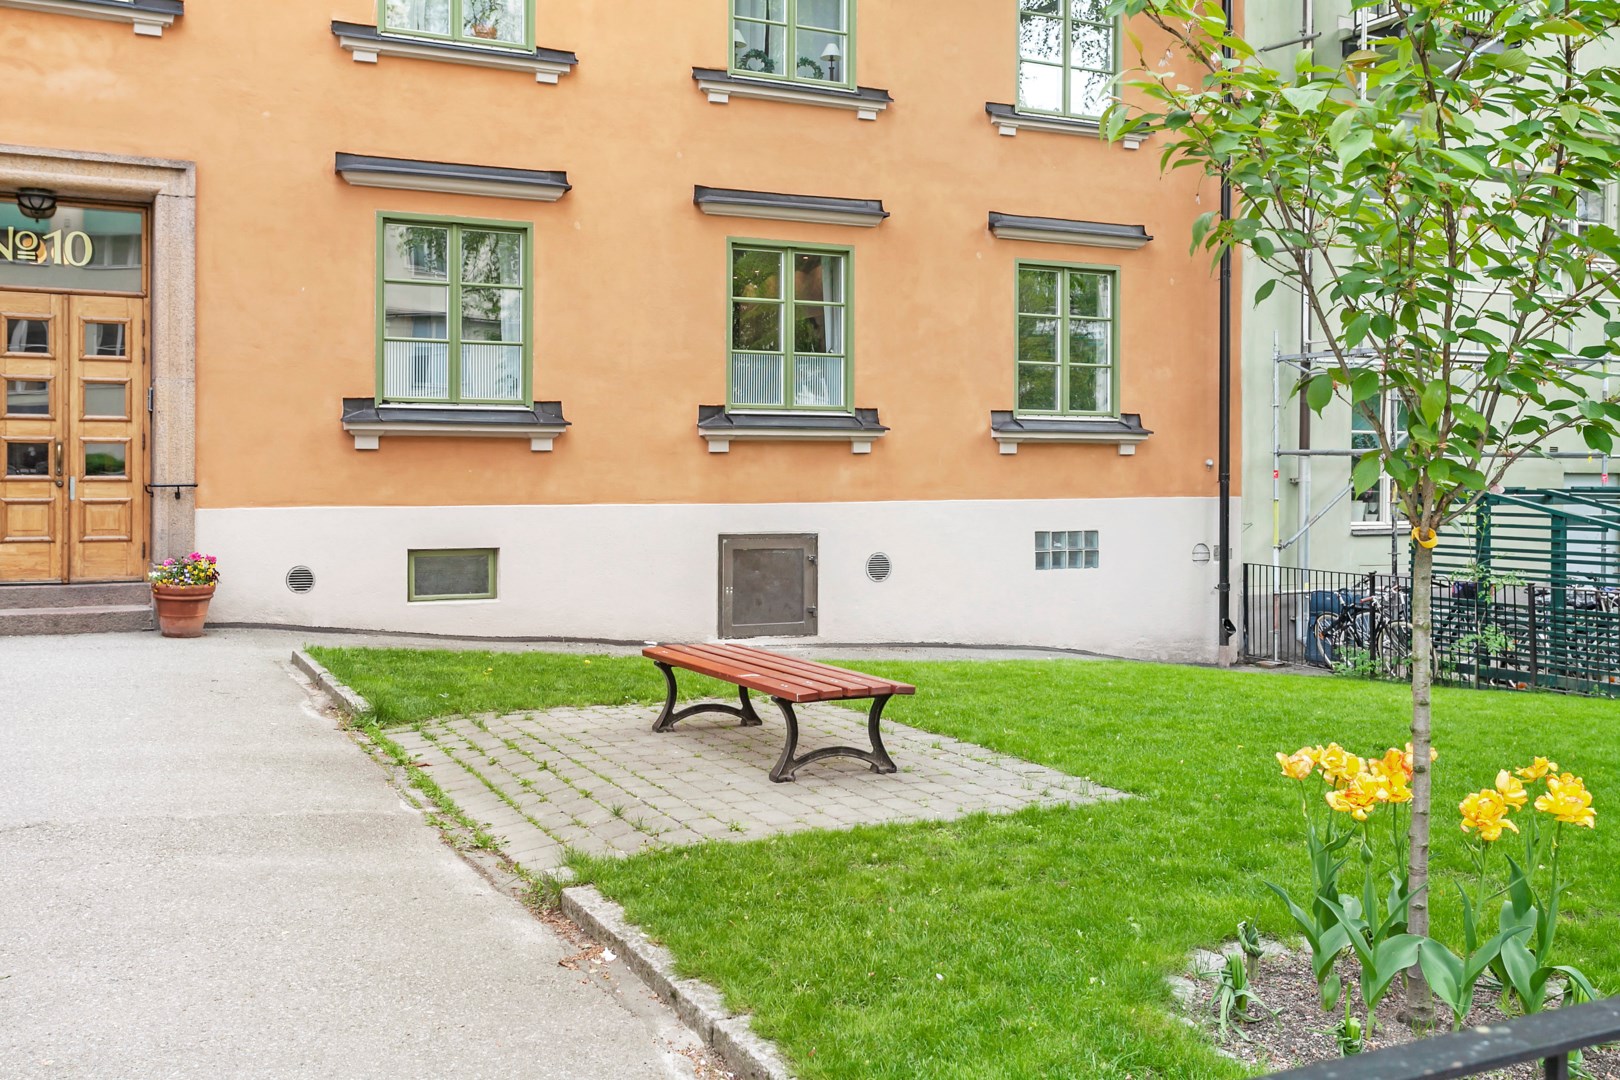 Bostadsbild från Fridhemsgatan 10 A, Kommande i Kungsholmen - Nedre Kungsholmen, Stockholm